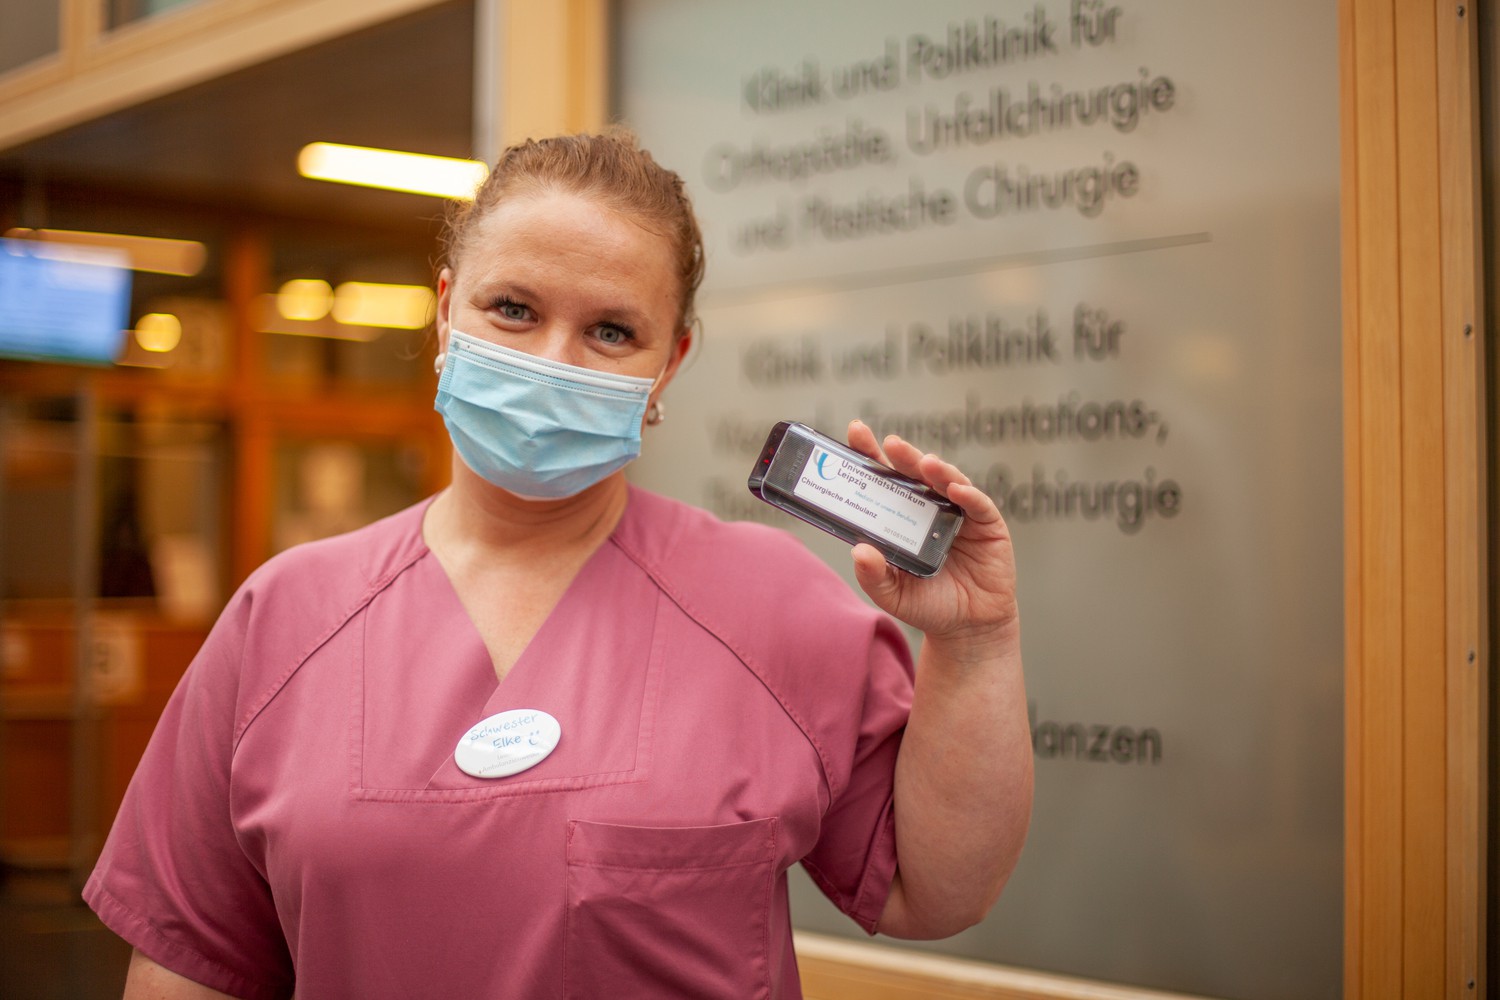 Schwester Elke Berenß von der Chirurgischen Ambulanz mit einem der neuen Pager, der es Patienten möglich macht, sich vom eigentlichen Wartebereich zu entfernen.